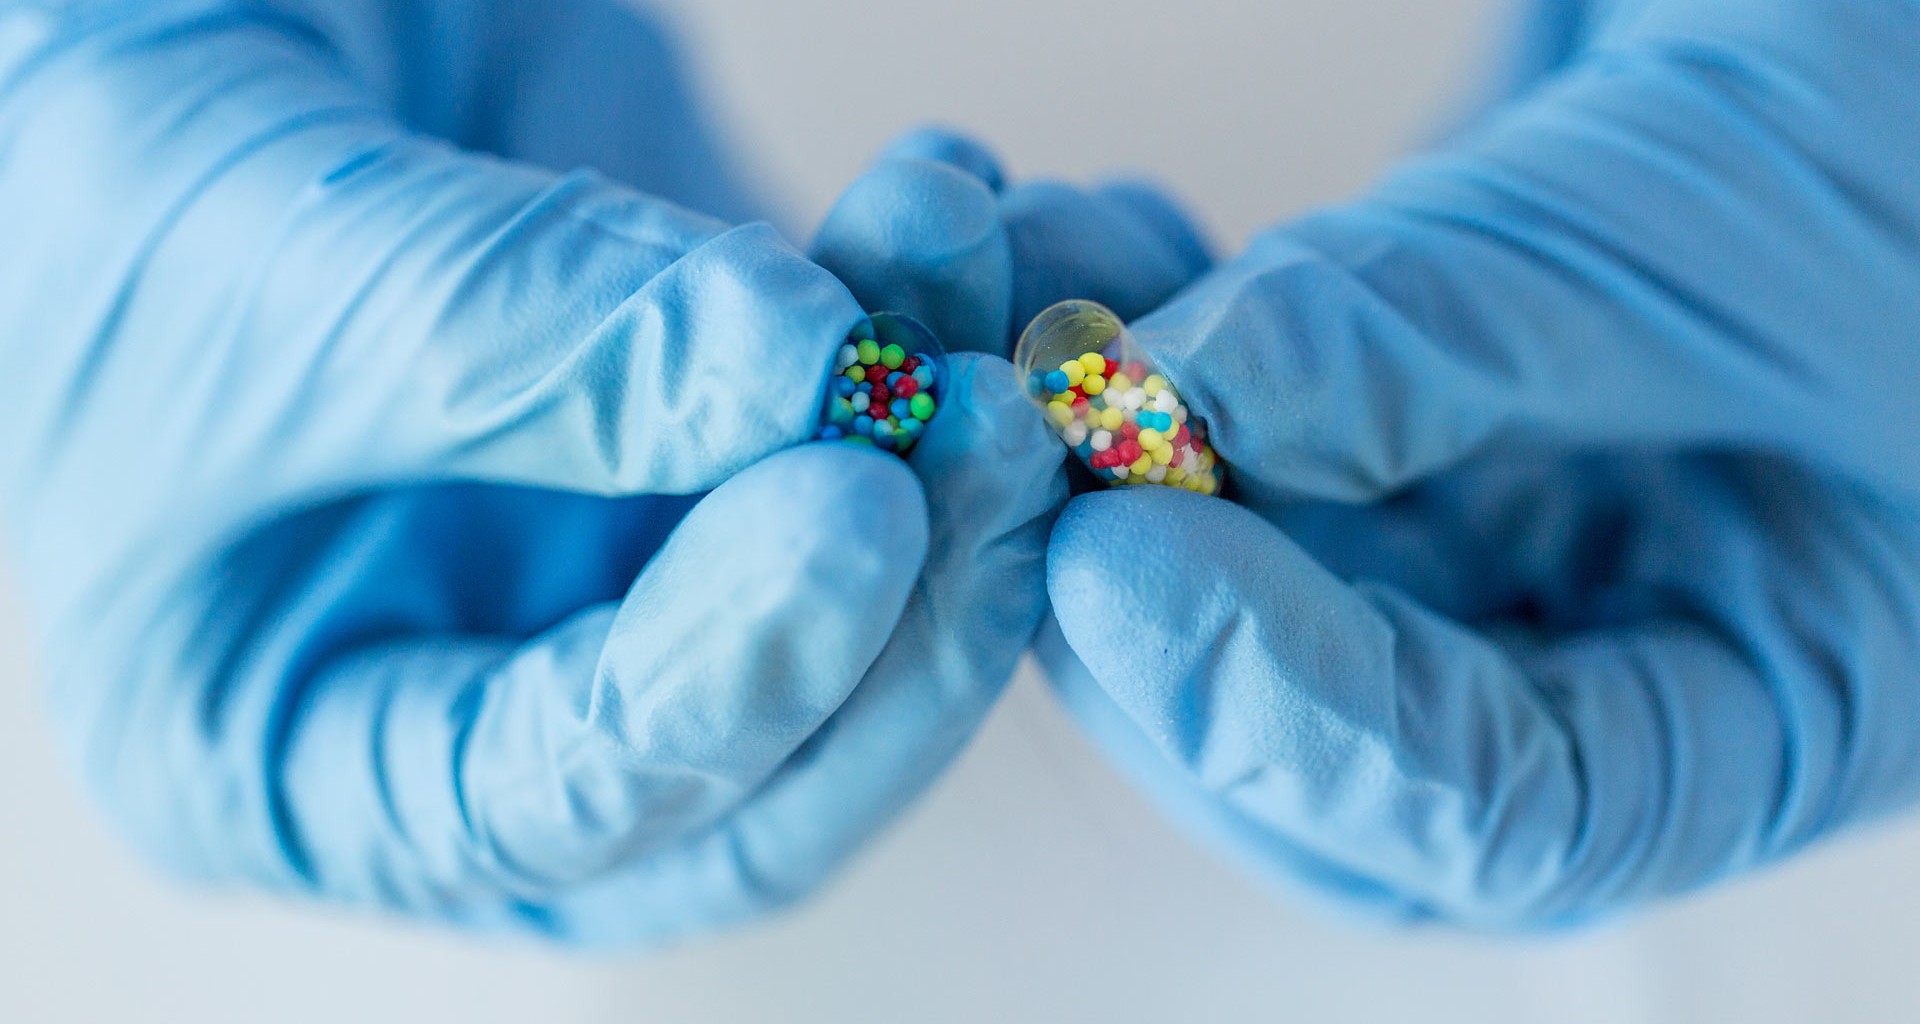 Investigadores Tec desarrollan mejores fármacos contra males genéticos